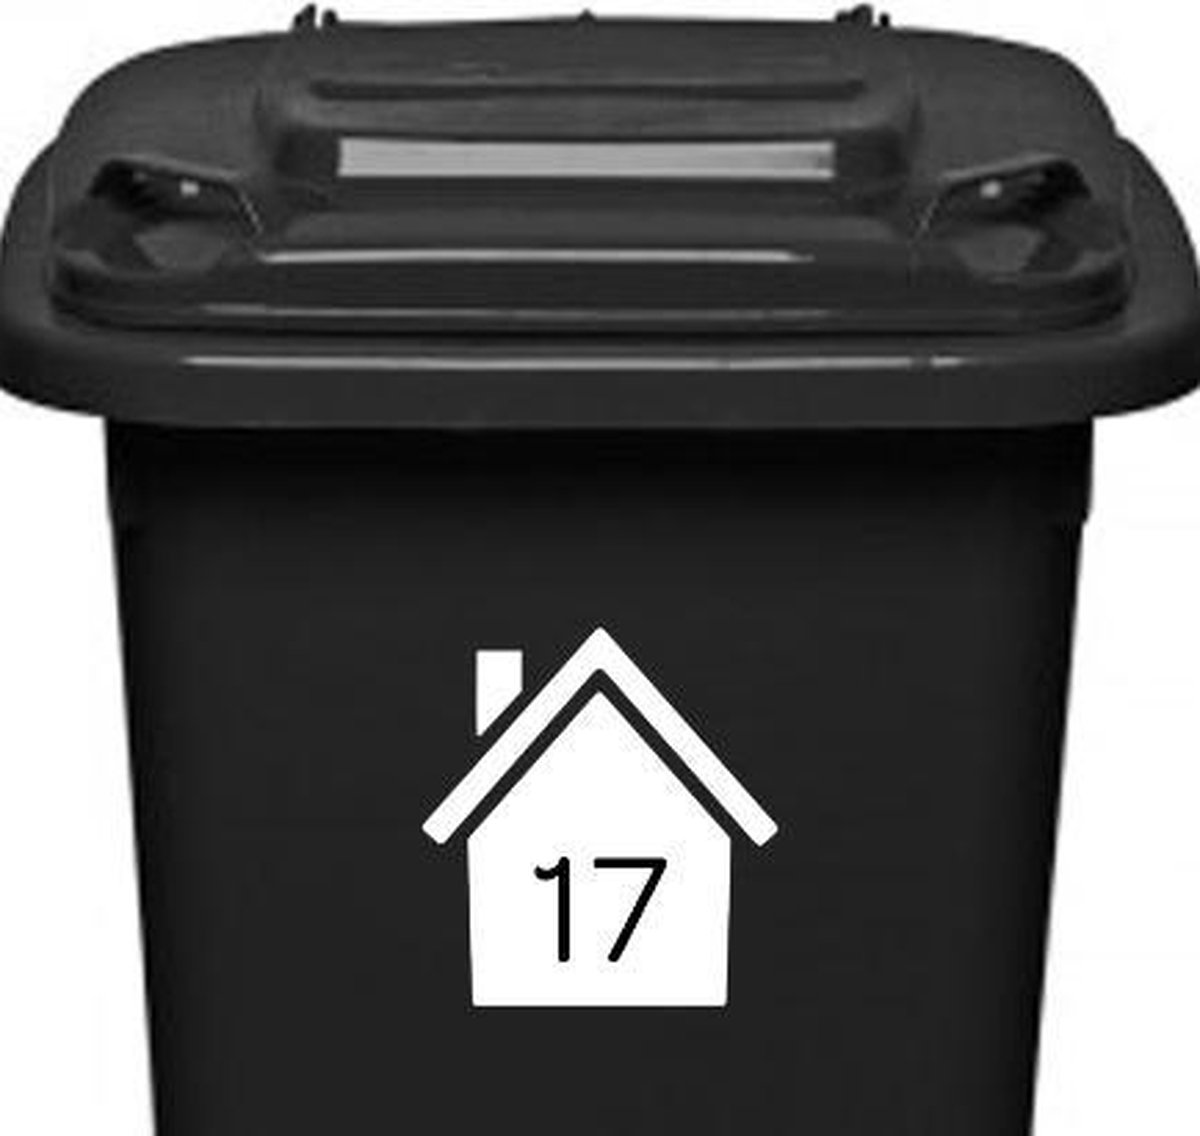 Klikosticker - met uw huisnummer - wit - weerbestendig - container kliko stickers -14,5 x 15,5 cm - cijfersticker - vuilnisbaksticker - Familiestickers